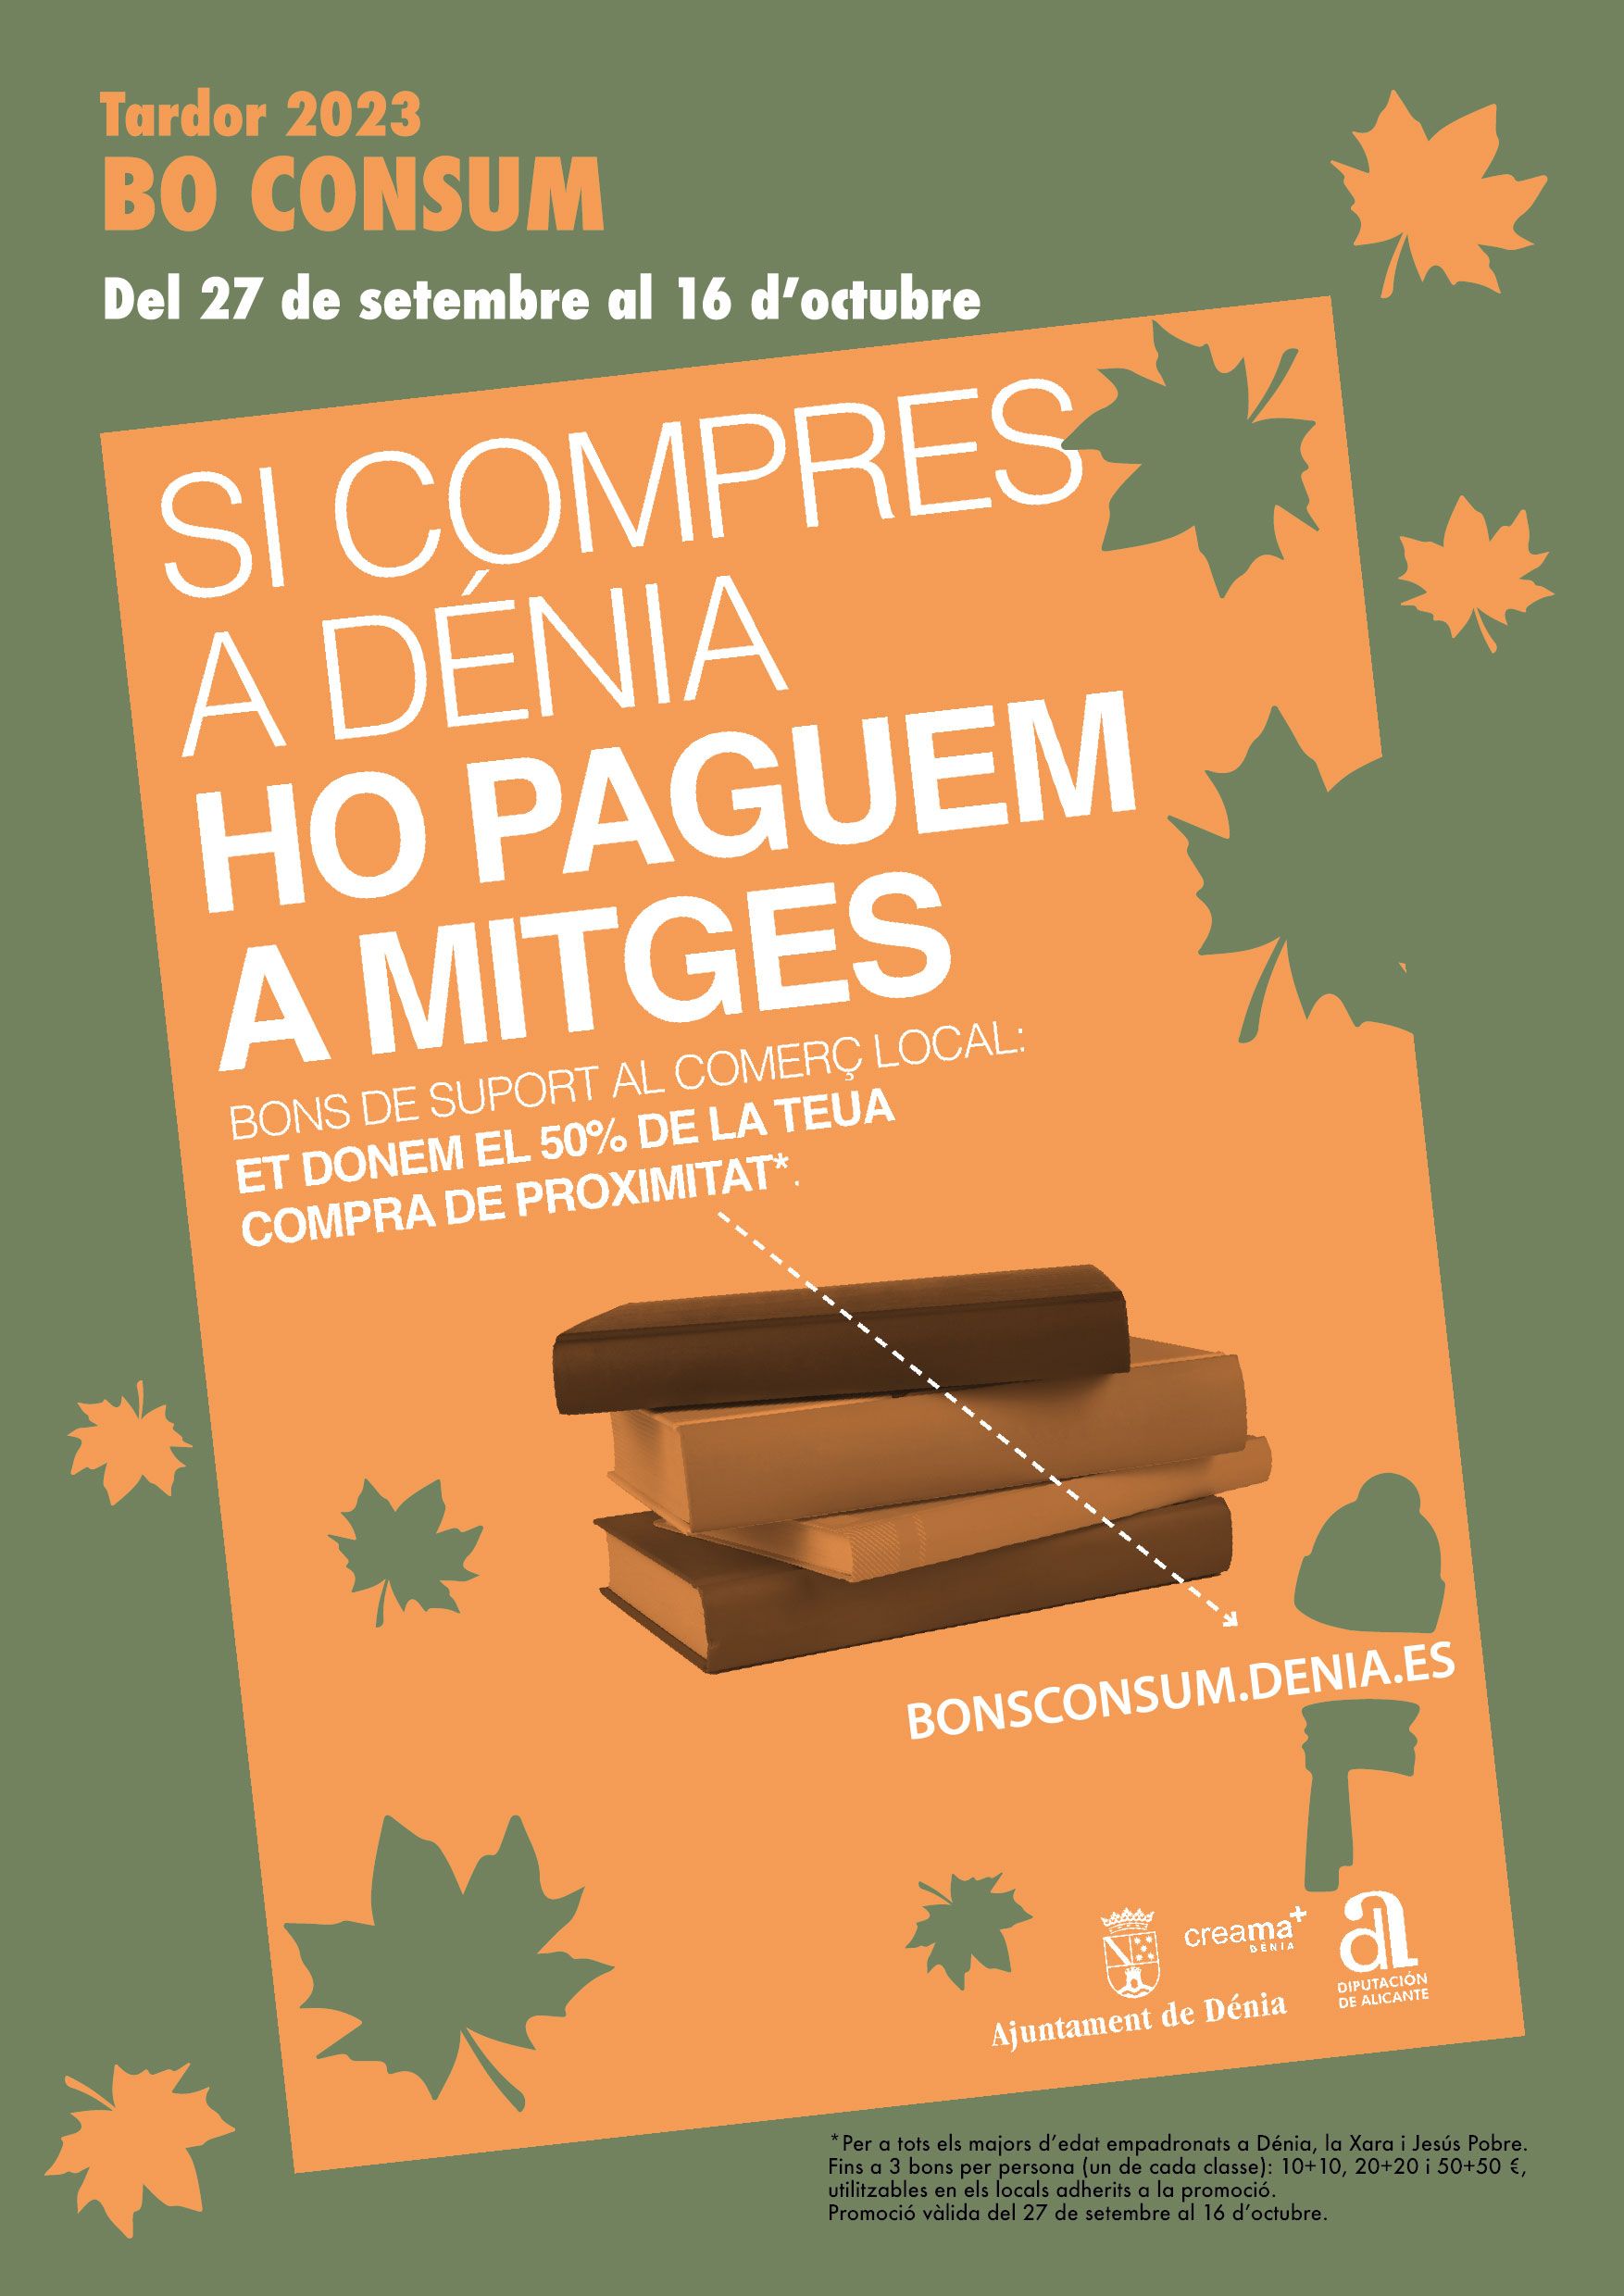 La nueva campaña de bonos consumo del Ajuntament de Dénia comienza el 27 de septiembre